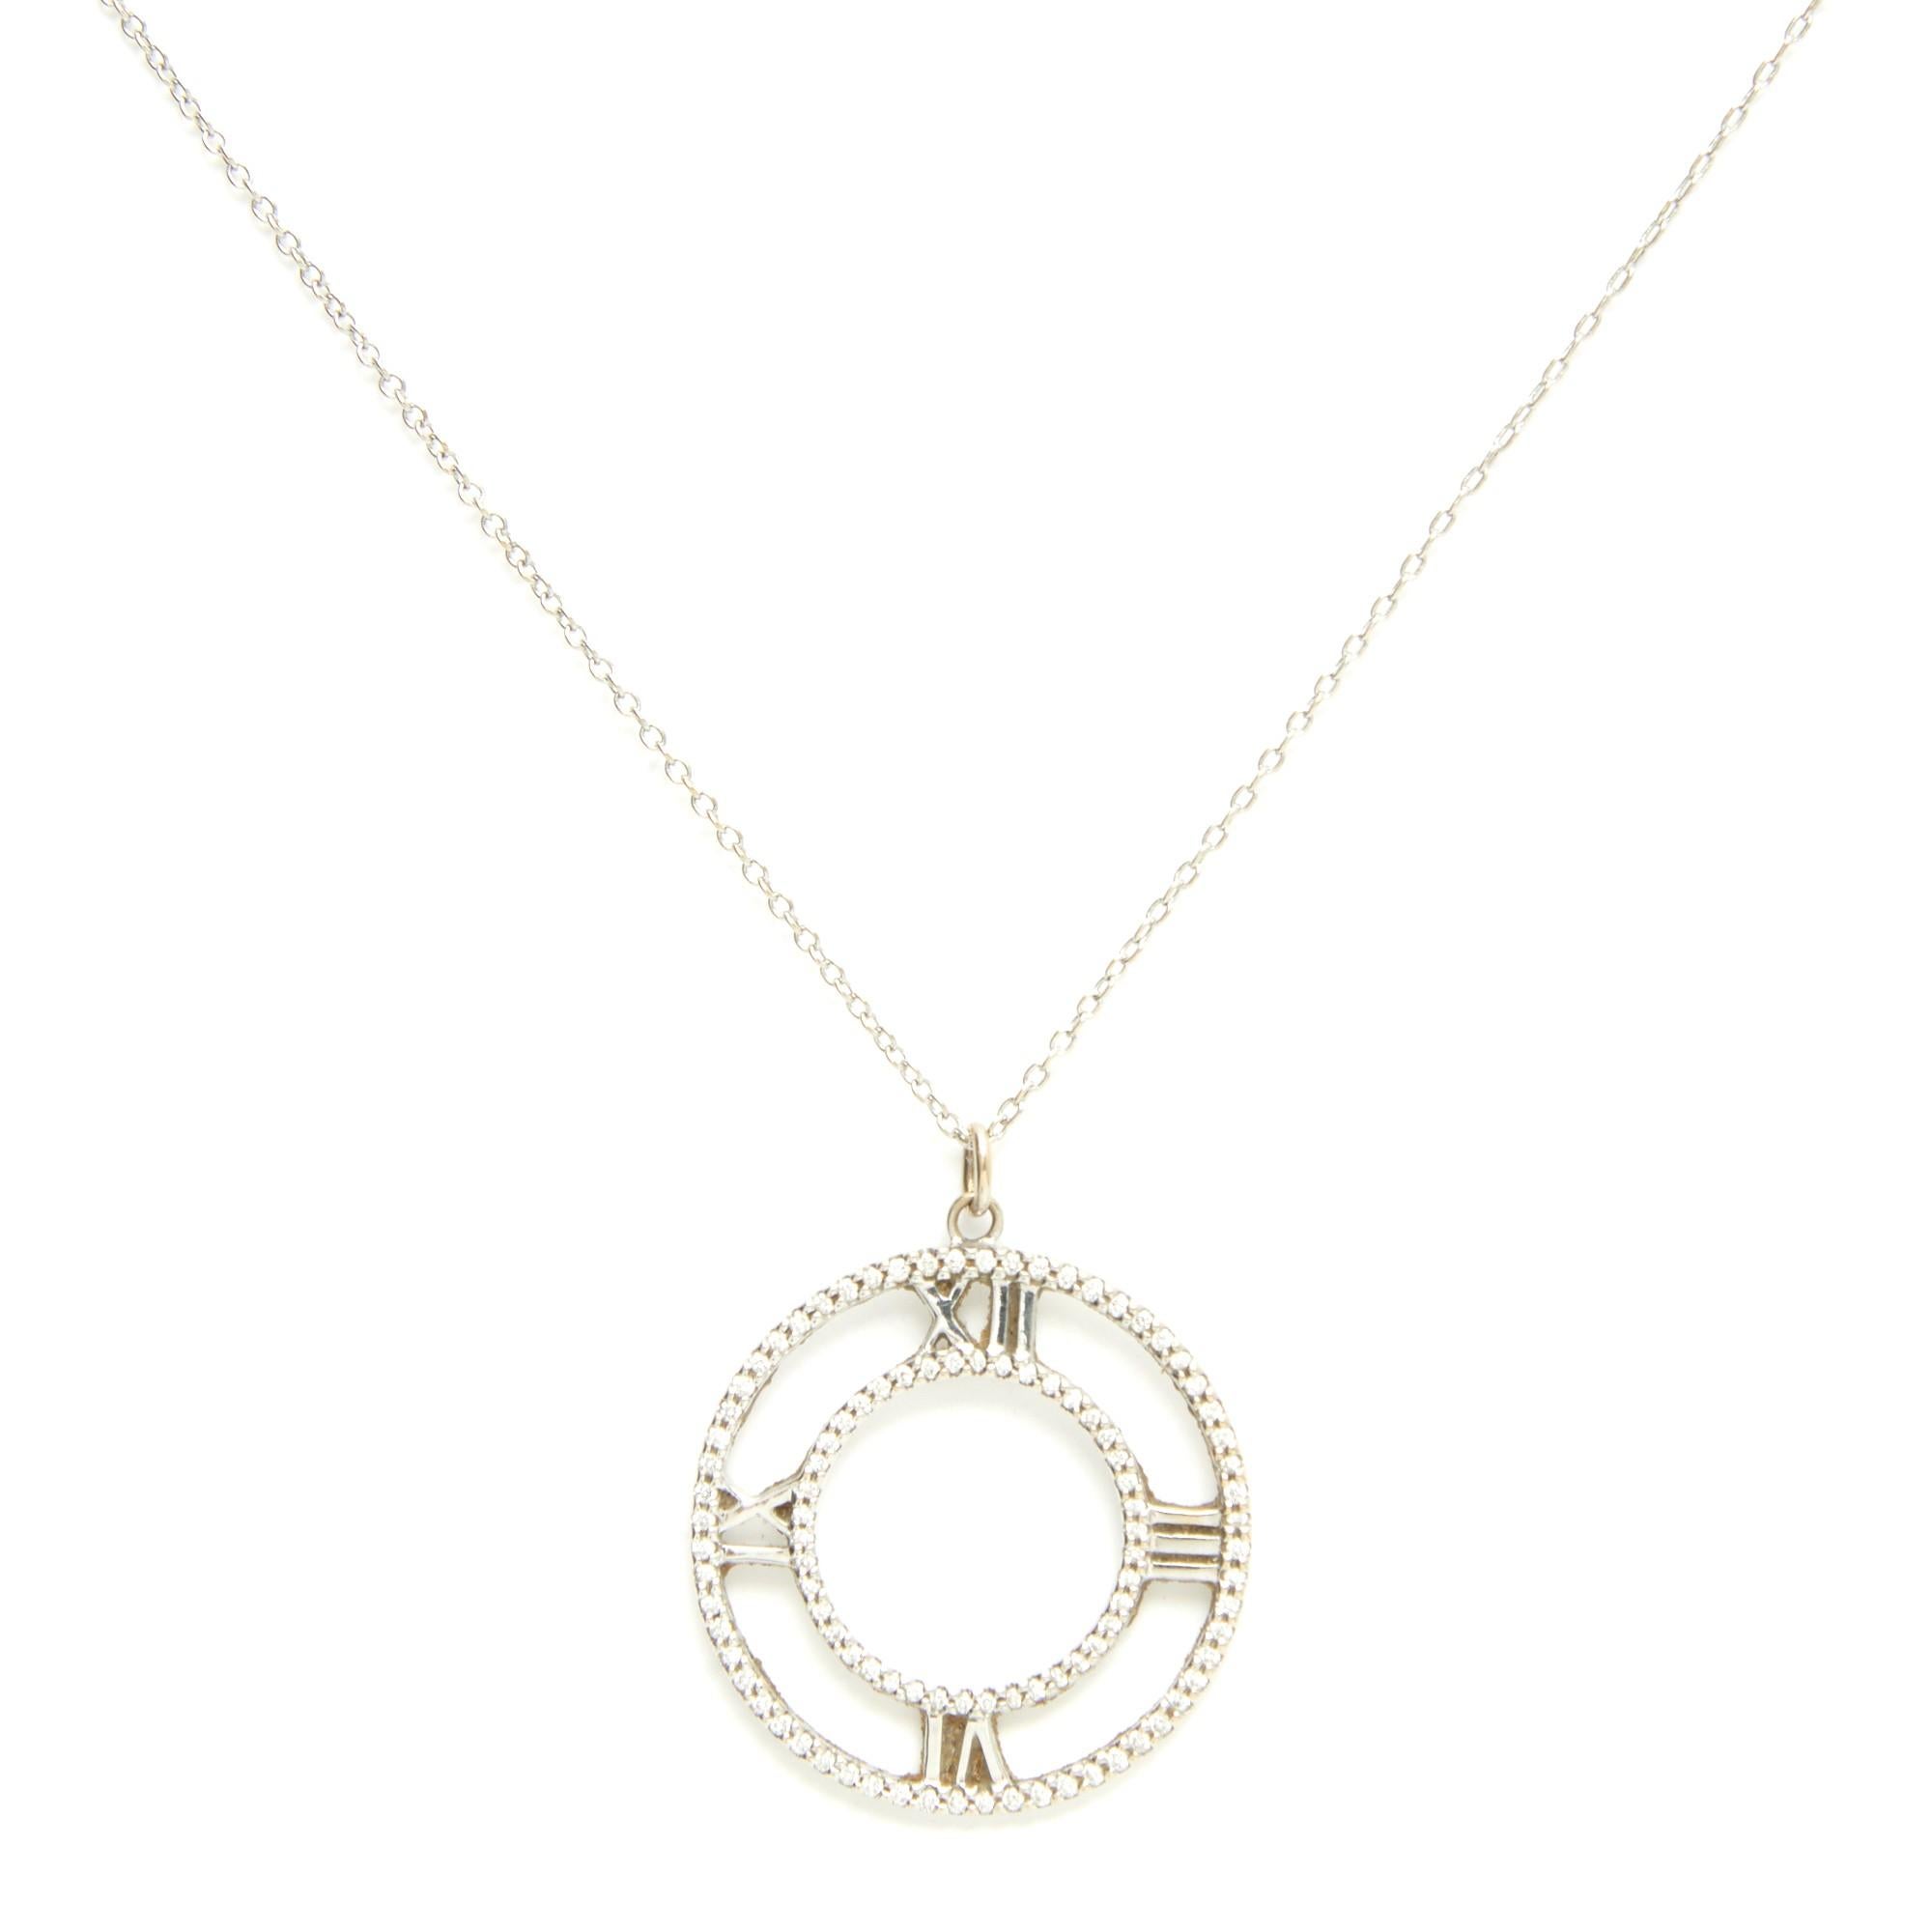 Collier modèle Atlas de Tiffany & Co en or blanc 18 carats, composé d'une chaîne et d'un pendentif de petite taille incrusté de diamants taillés en brillant. Longueur du collier ouvert 59,7 cm, diamètre du pendentif 2,9 cm, poids des brillants 0,14